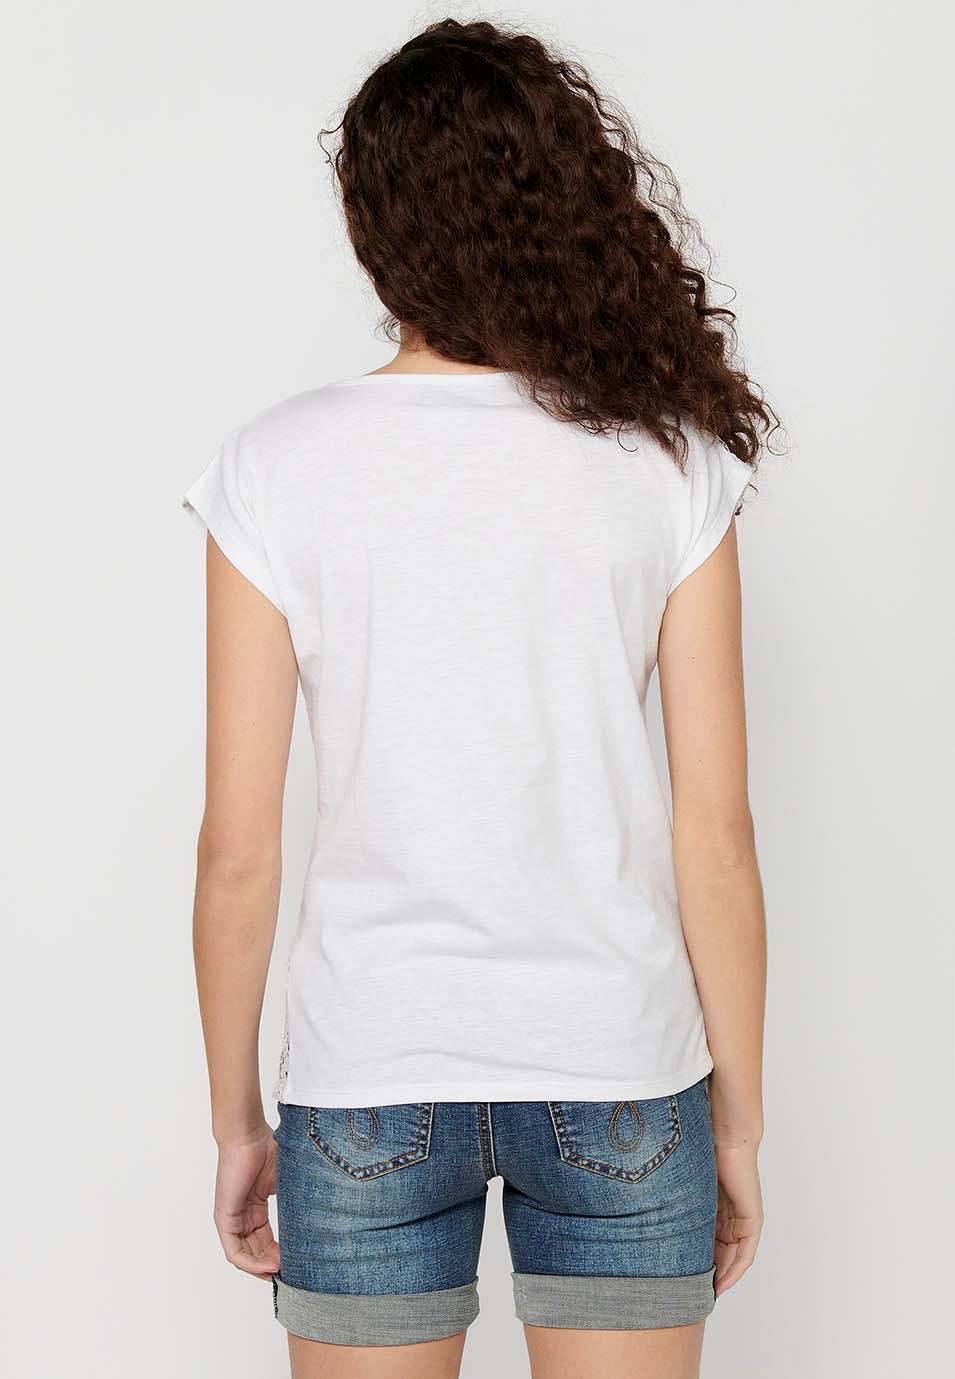 Camiseta de manga corta Top de Algodón con Cuello redondo y Bordado floral delantero de Color Blanco para Mujer 7